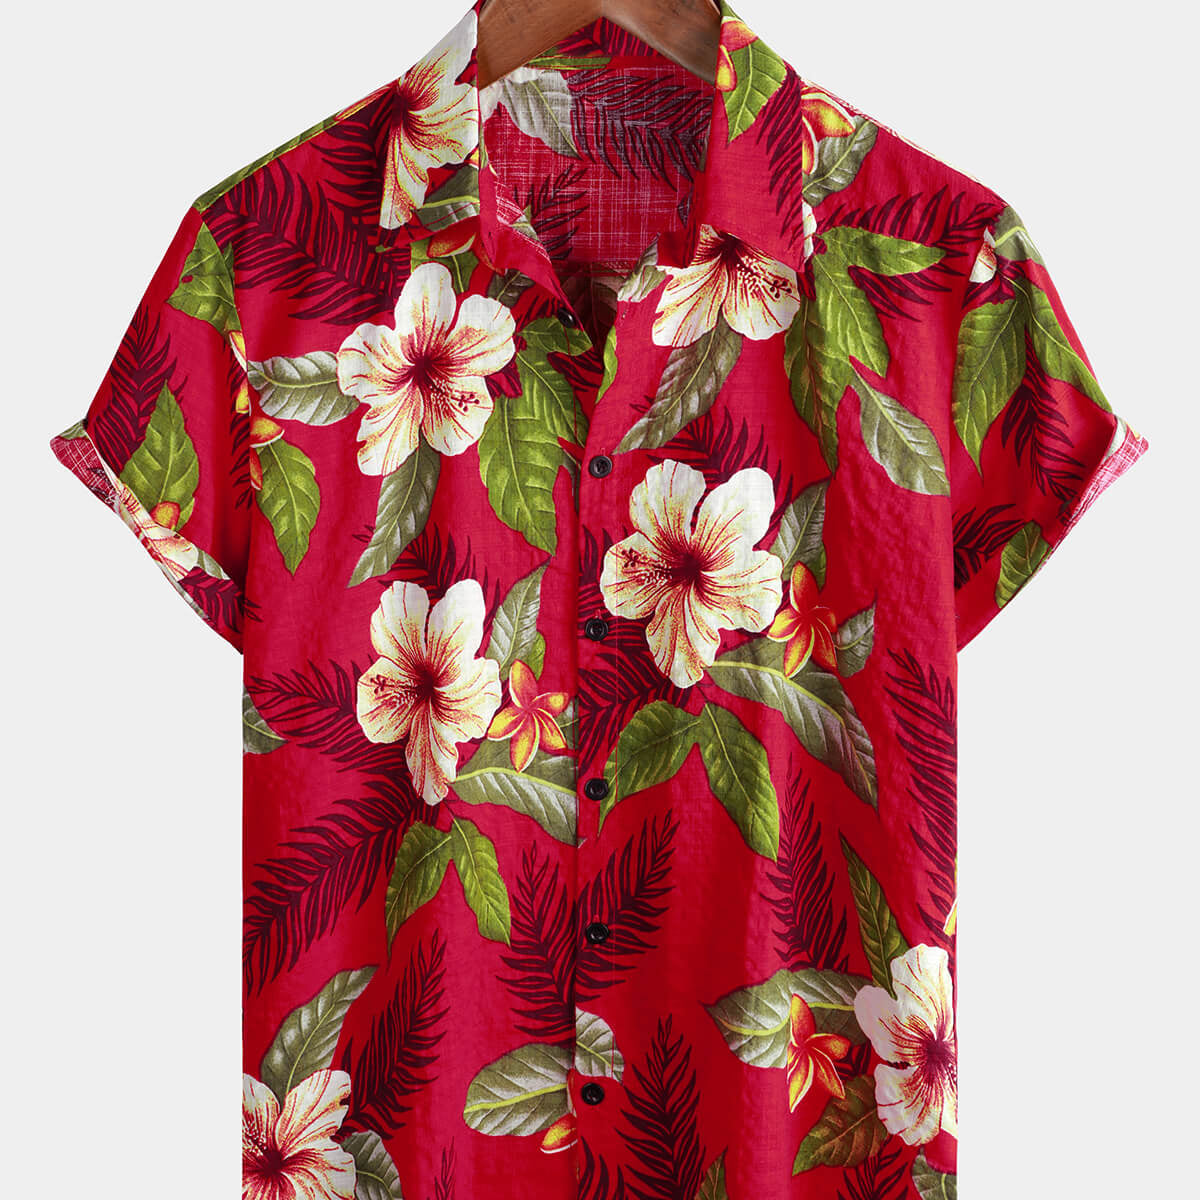 Camisa de manga corta con botones y estampado floral tropical de verano hawaiano rojo para hombre